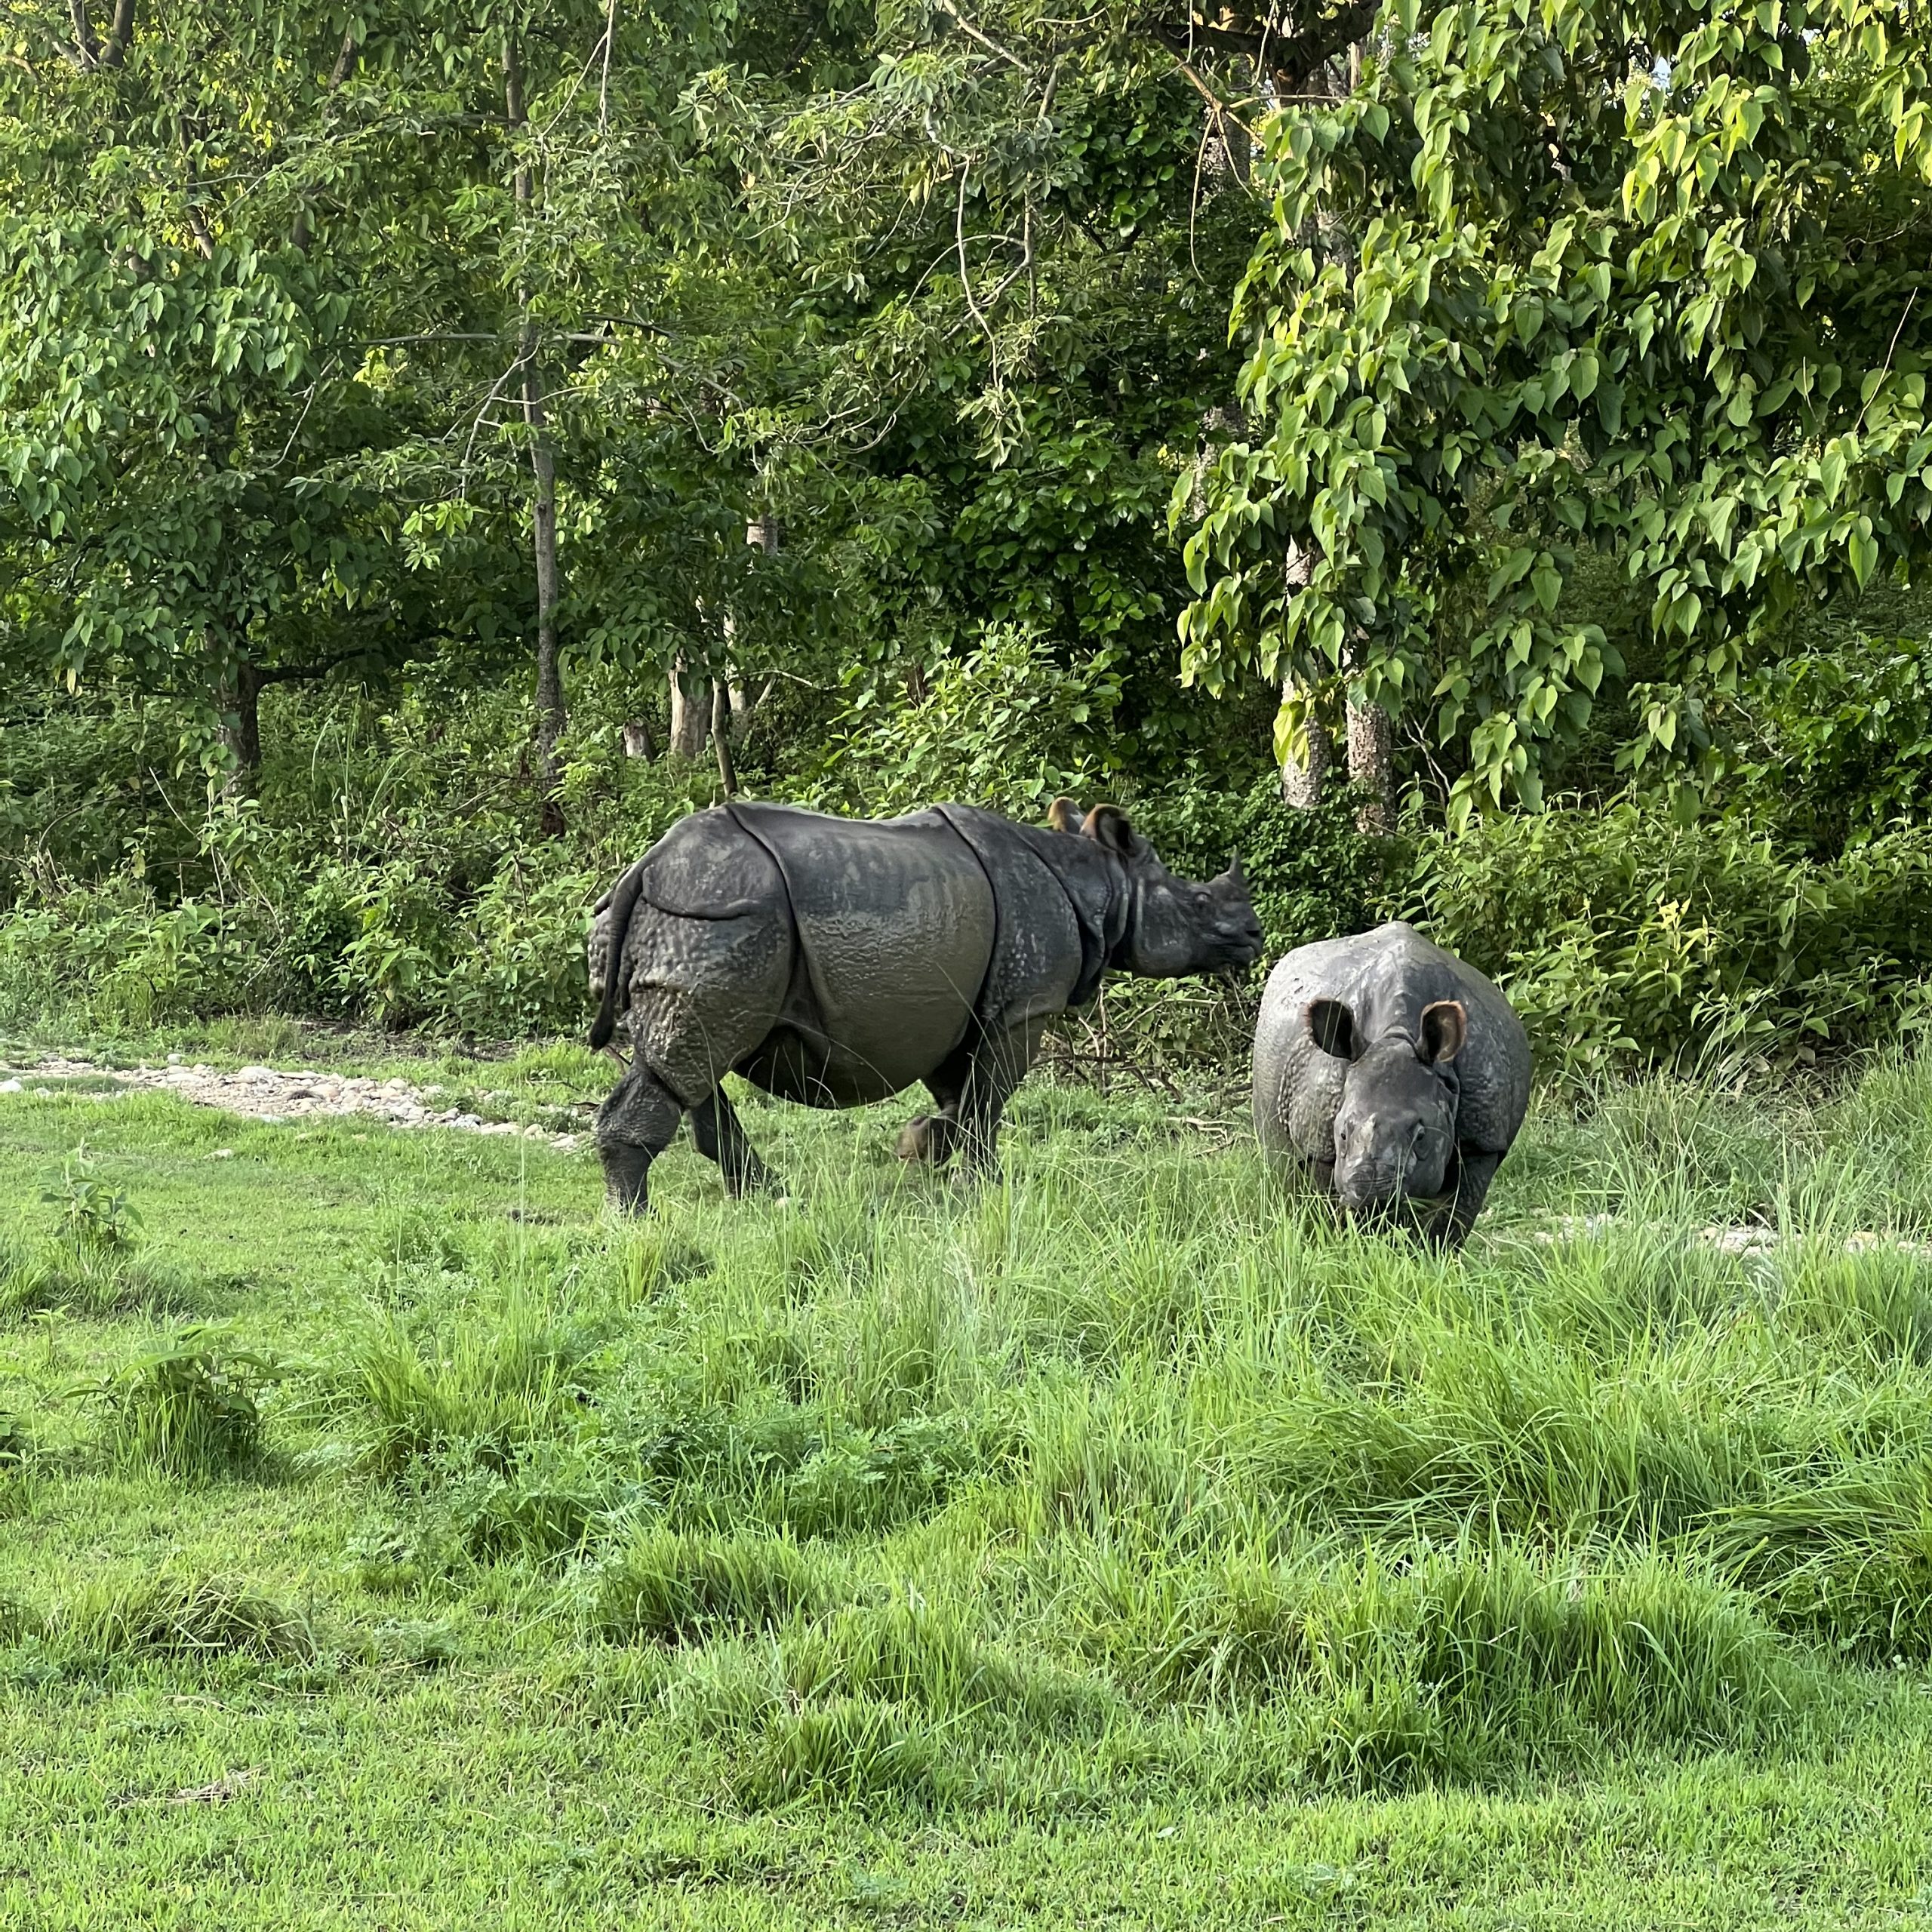 rhino seen in Chitwan safari tour